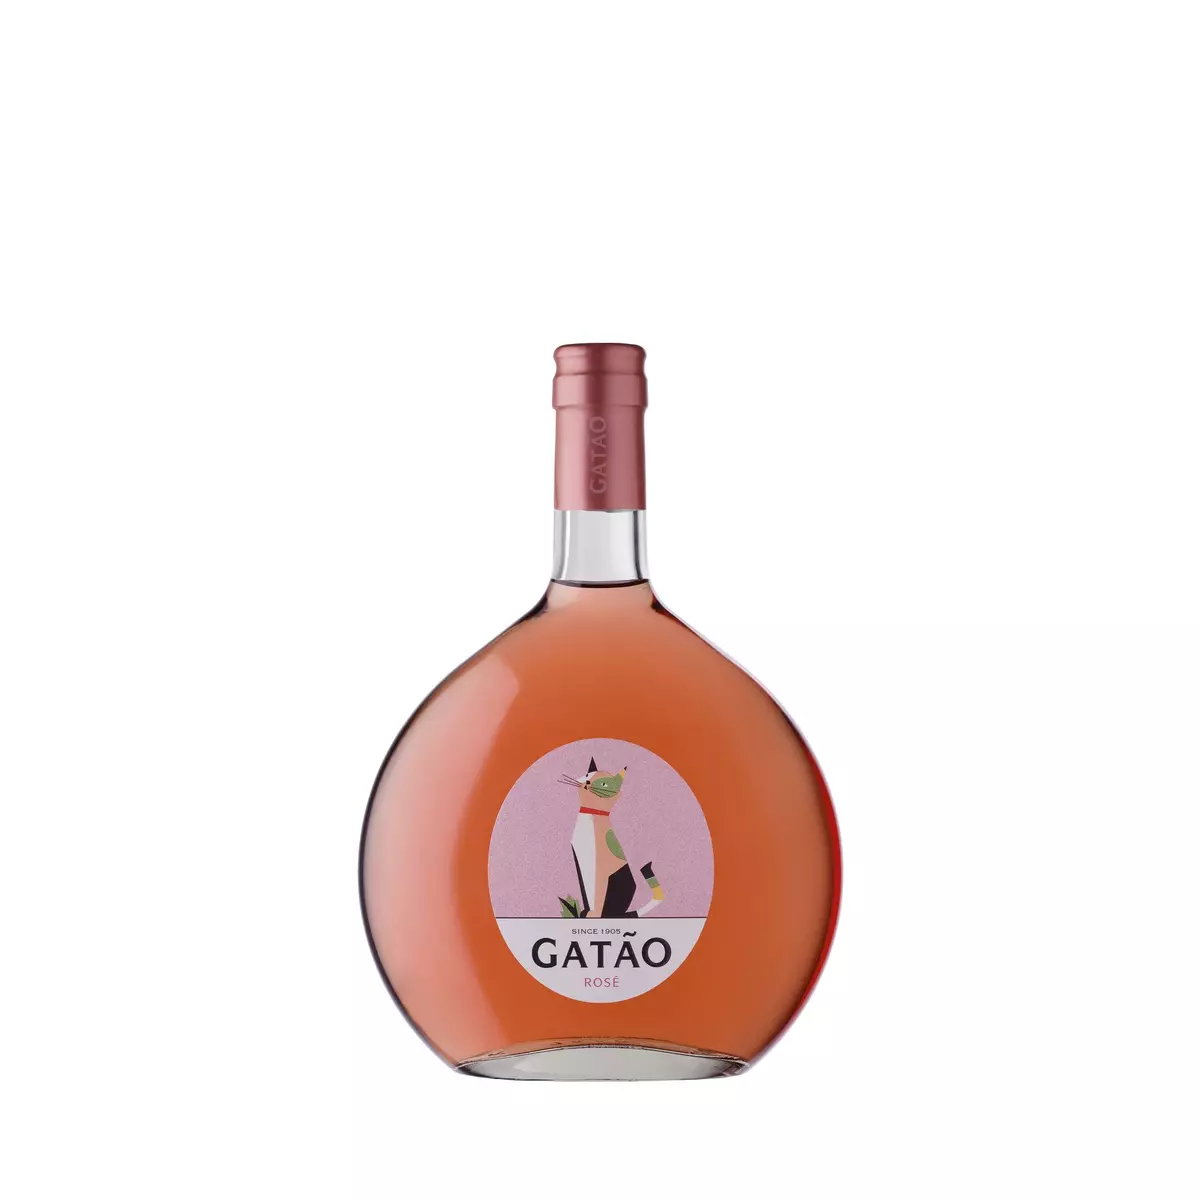 GATAO Vins du Portugal rosé 75cl